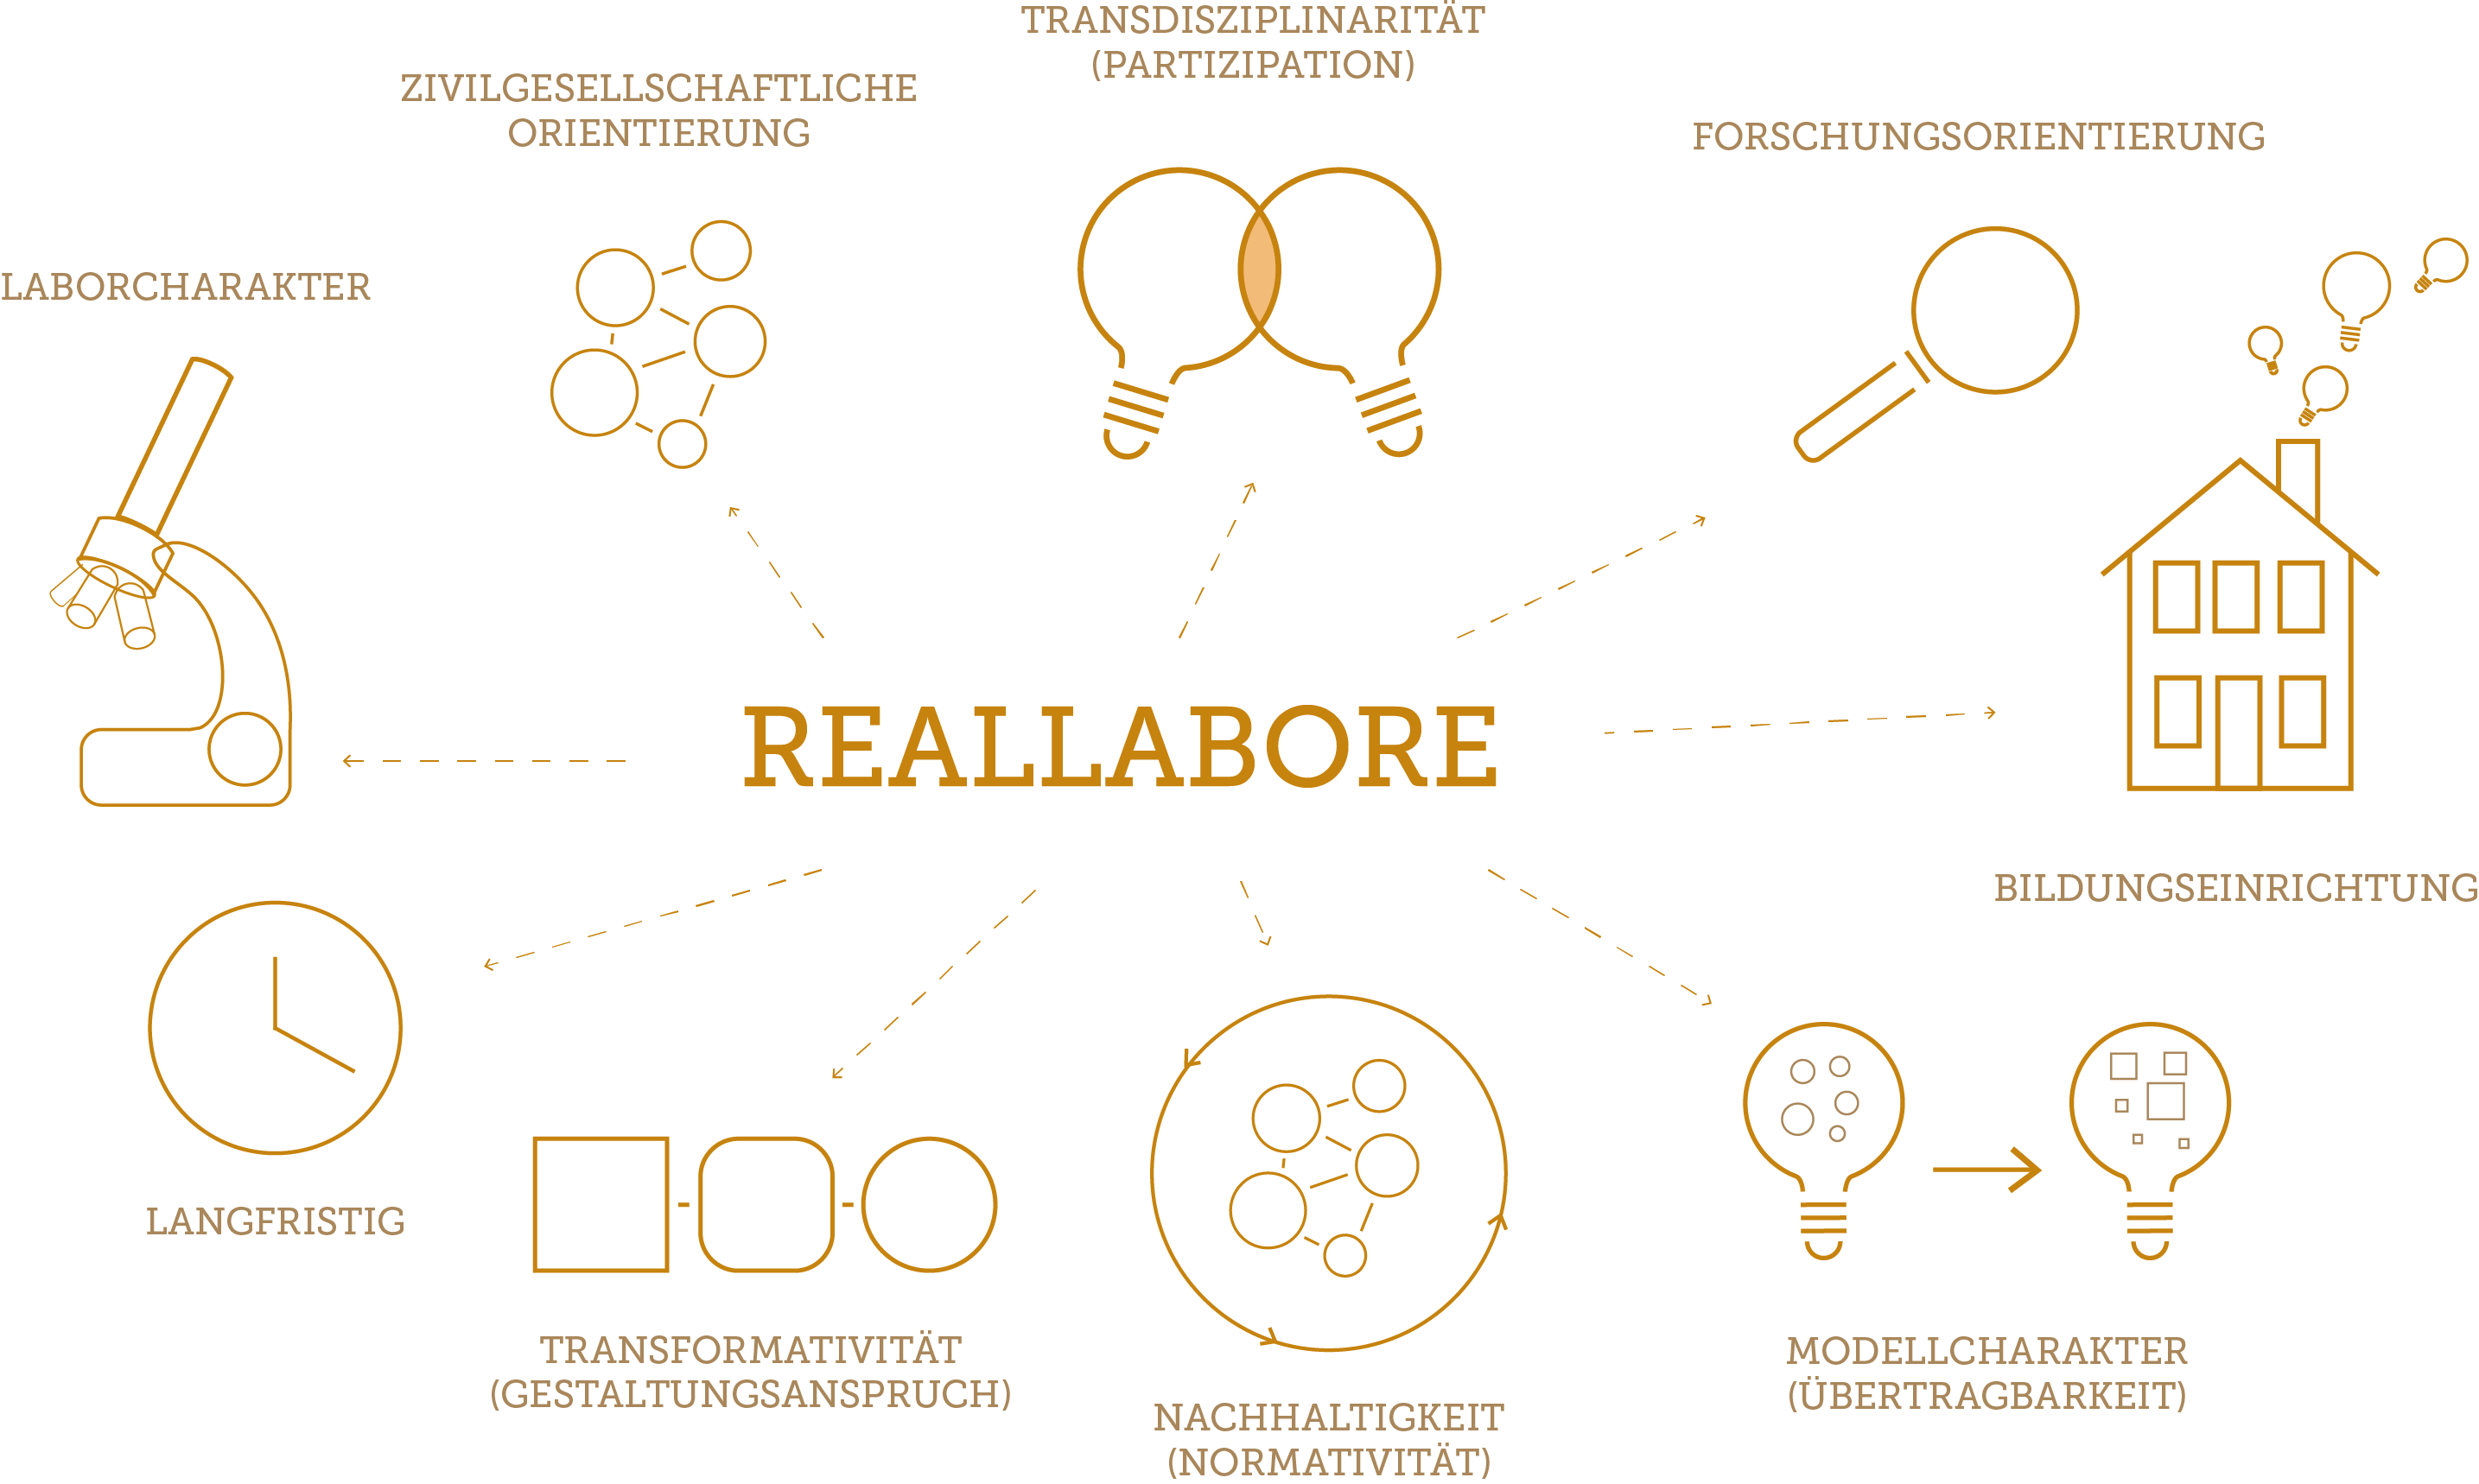 Eine Grafik, die die Definition eines Reallabors verbildlicht. In der Mitte steht "Reallabore", davon zweigen verschiedene Begriffe mit passenden Symbolen ab. Beispielsweise "langfristig", symbolisiert mit einer Uhr oder "Laborcharakter", symbolisiert mit einem Mikroskop.